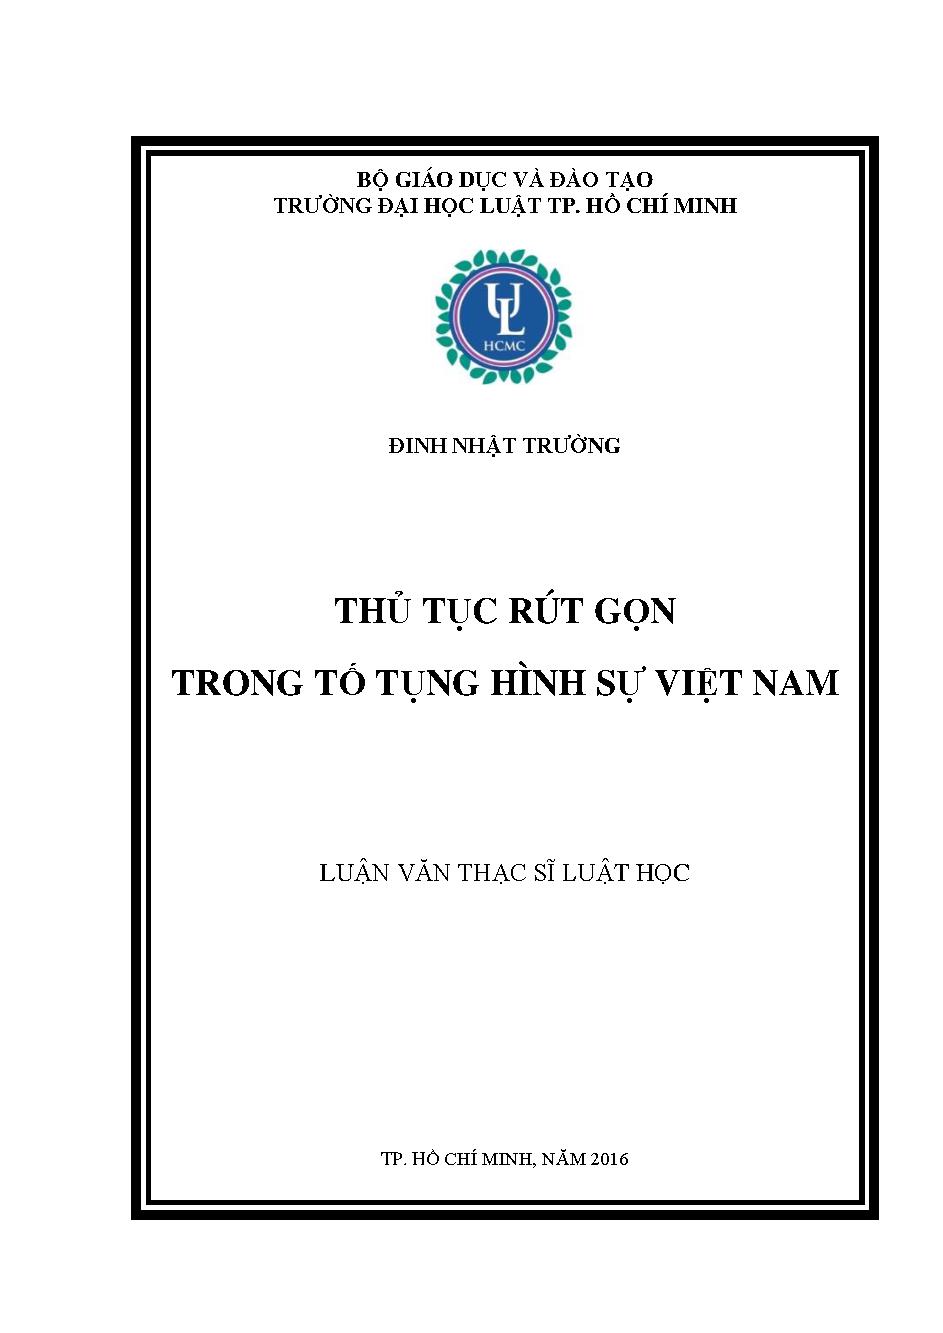 Thủ tục rút gọn trong tố tụng hình sự Việt Nam